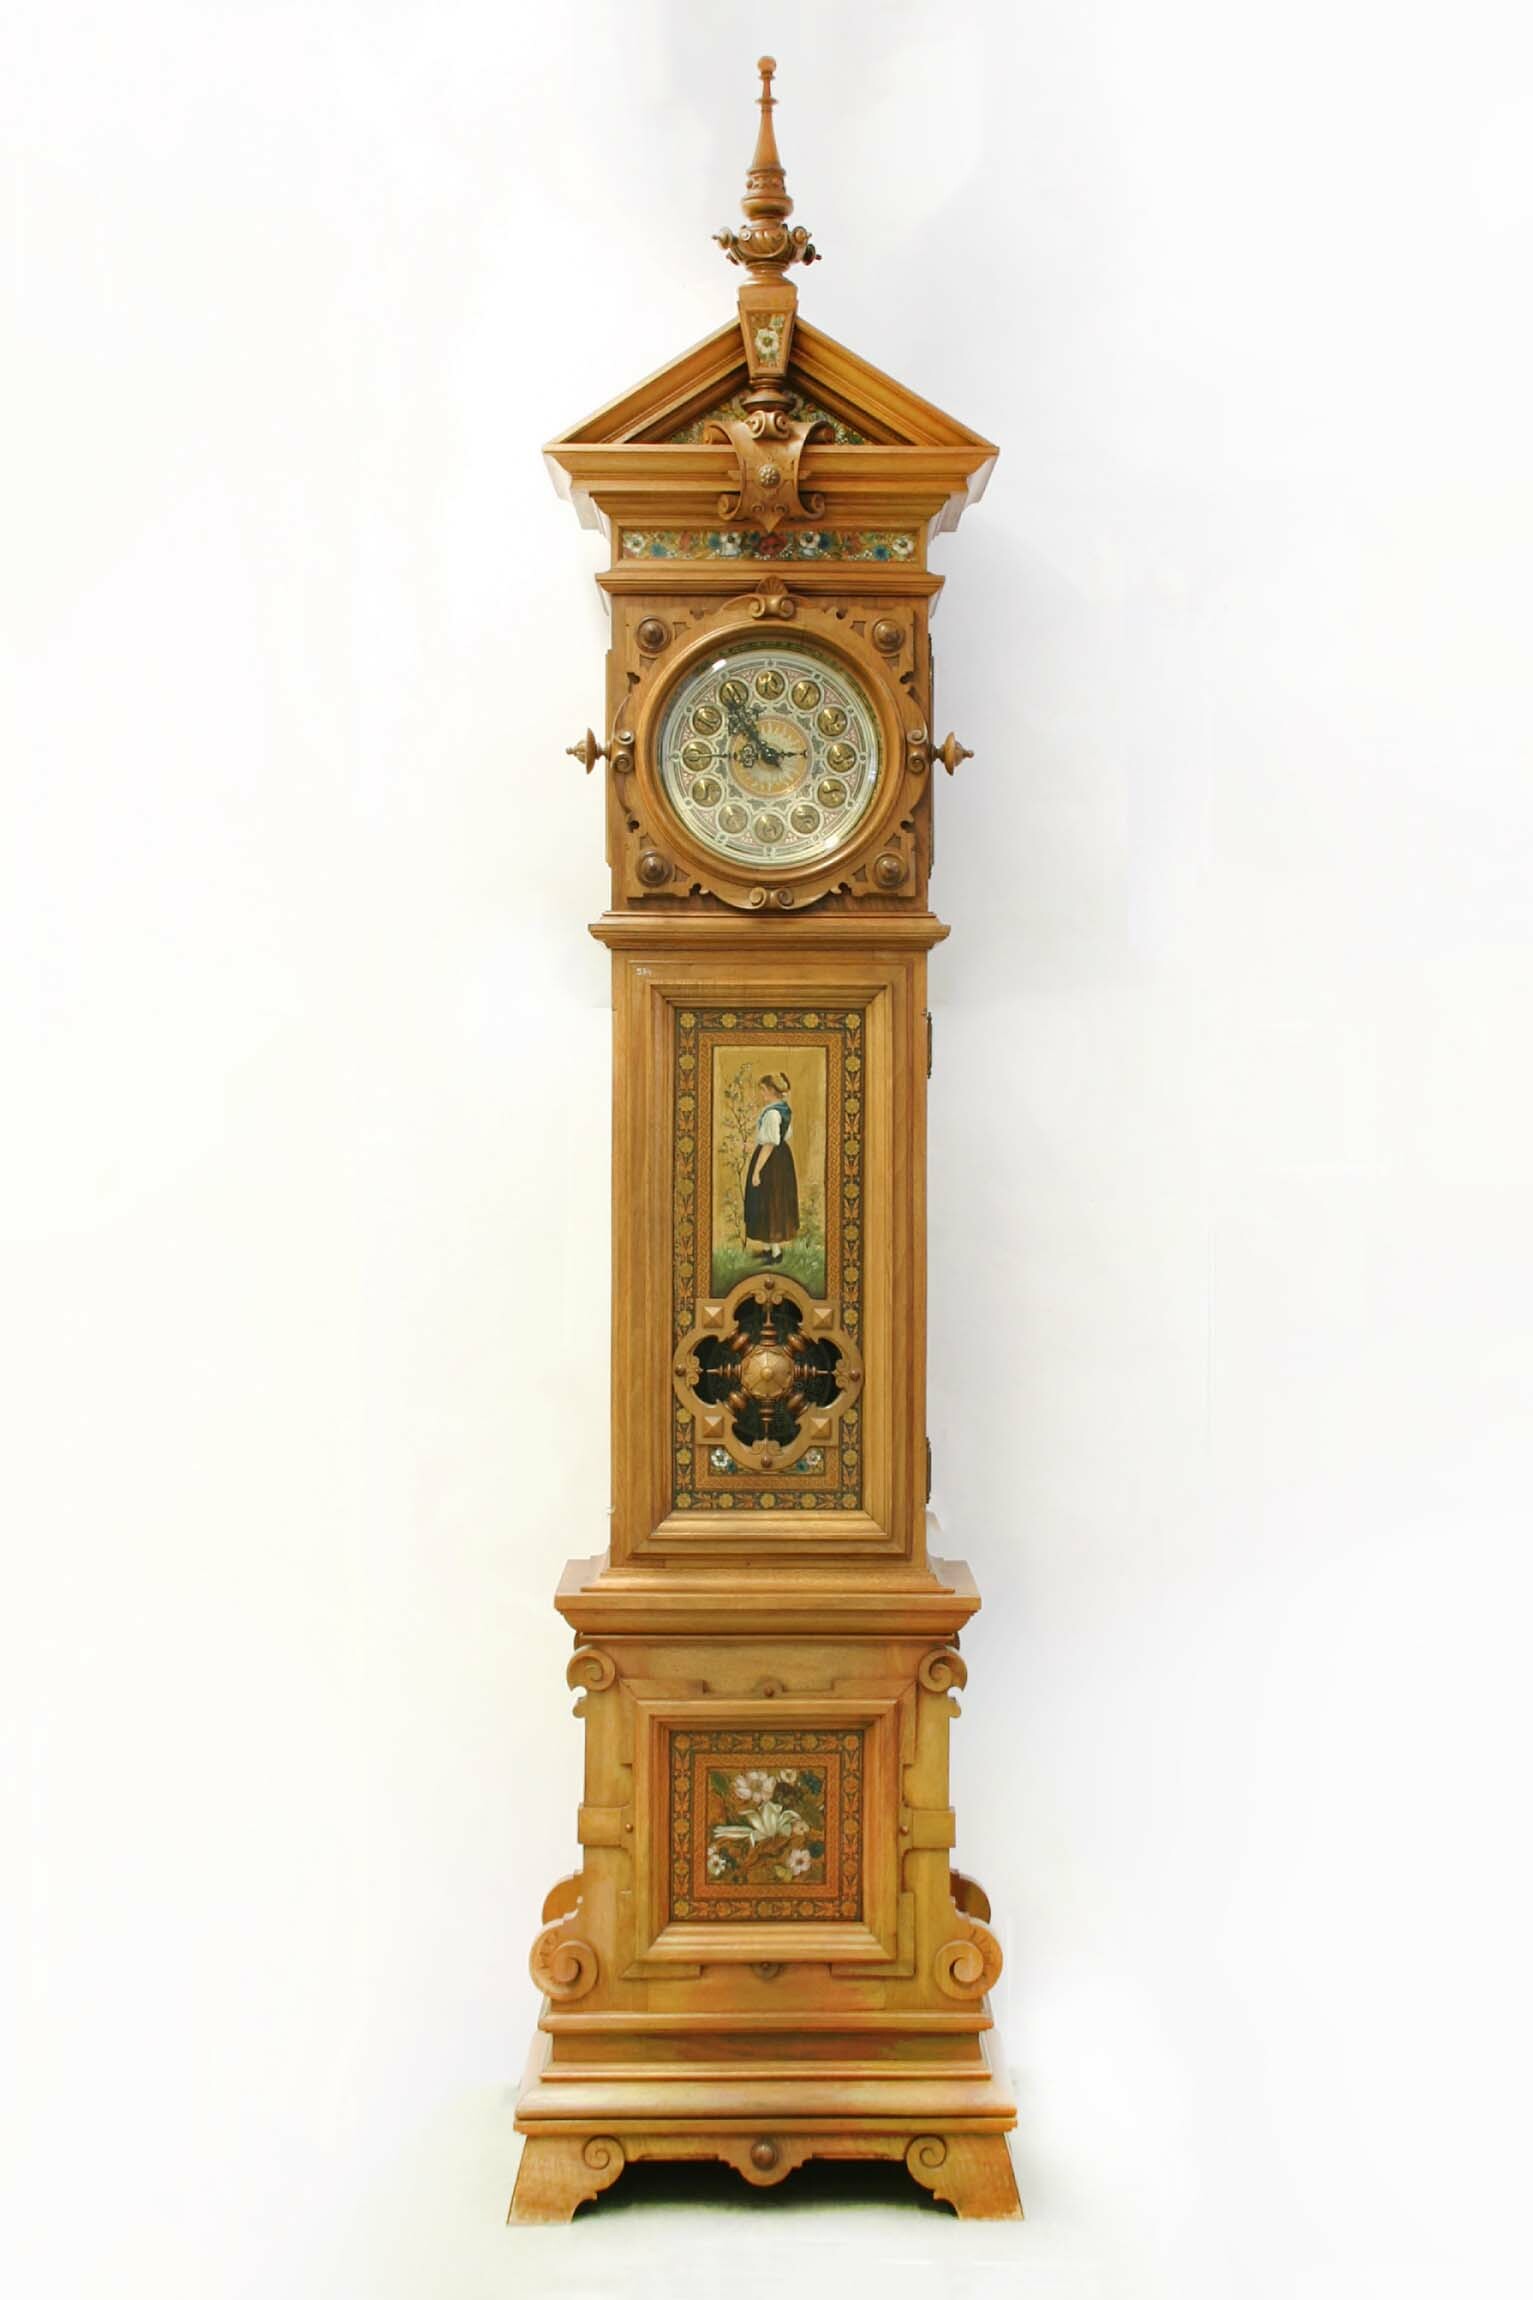 Bodenstanduhr, Robert Bichweiler, Lorenz Furtwängler Söhne, Furtwangen, 1891 (Deutsches Uhrenmuseum CC BY-SA)